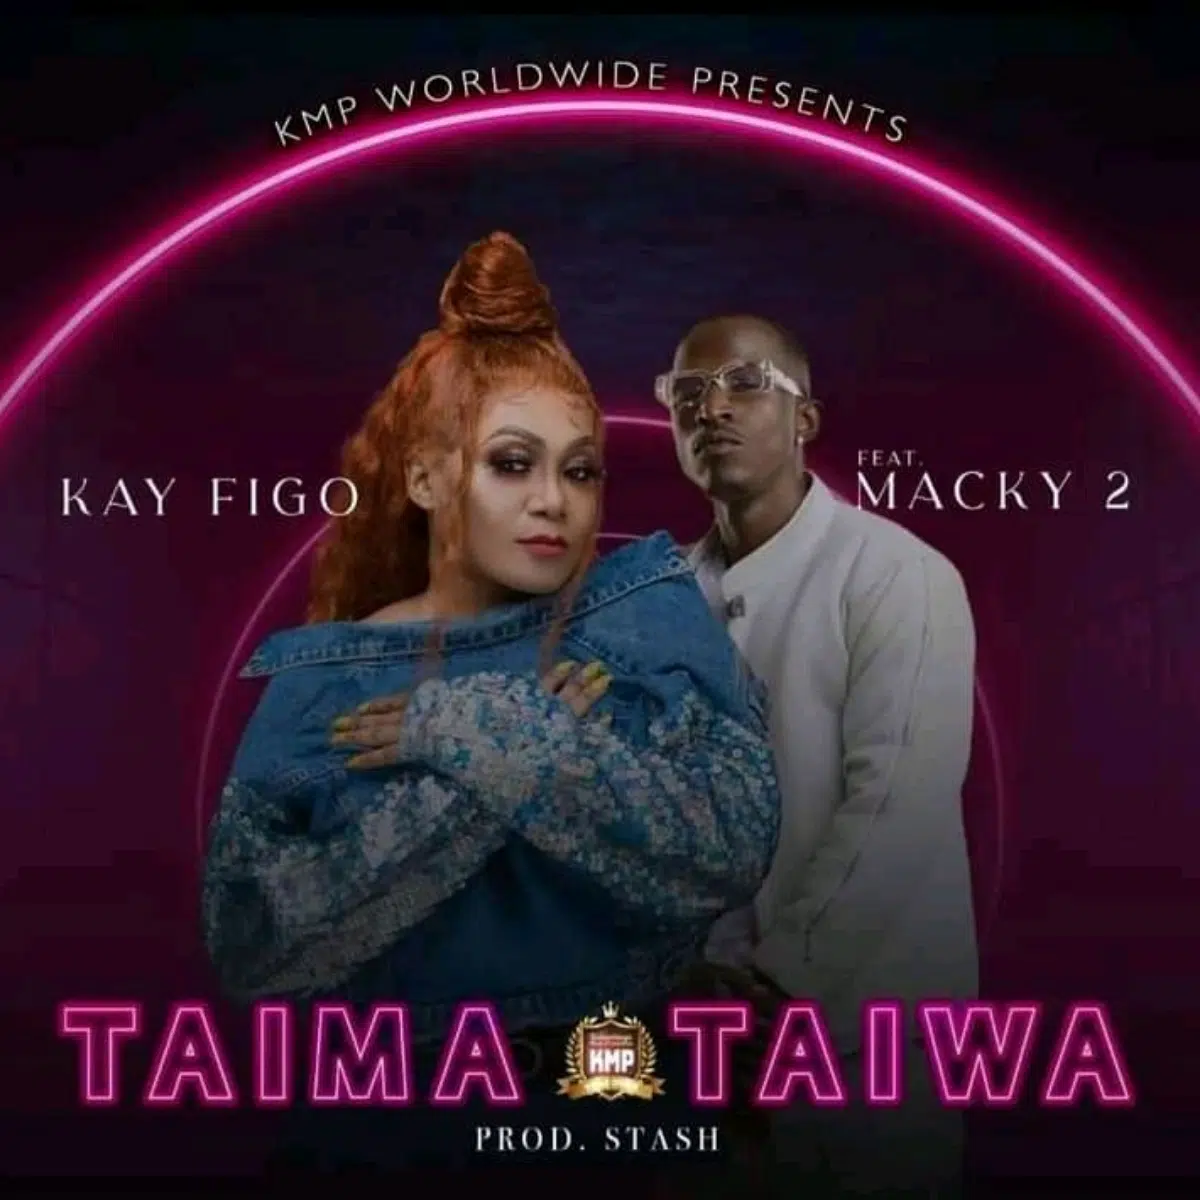 DOWNLOAD: Kay Figo Feat Macky 2 – “Taima Taiwa” Mp3